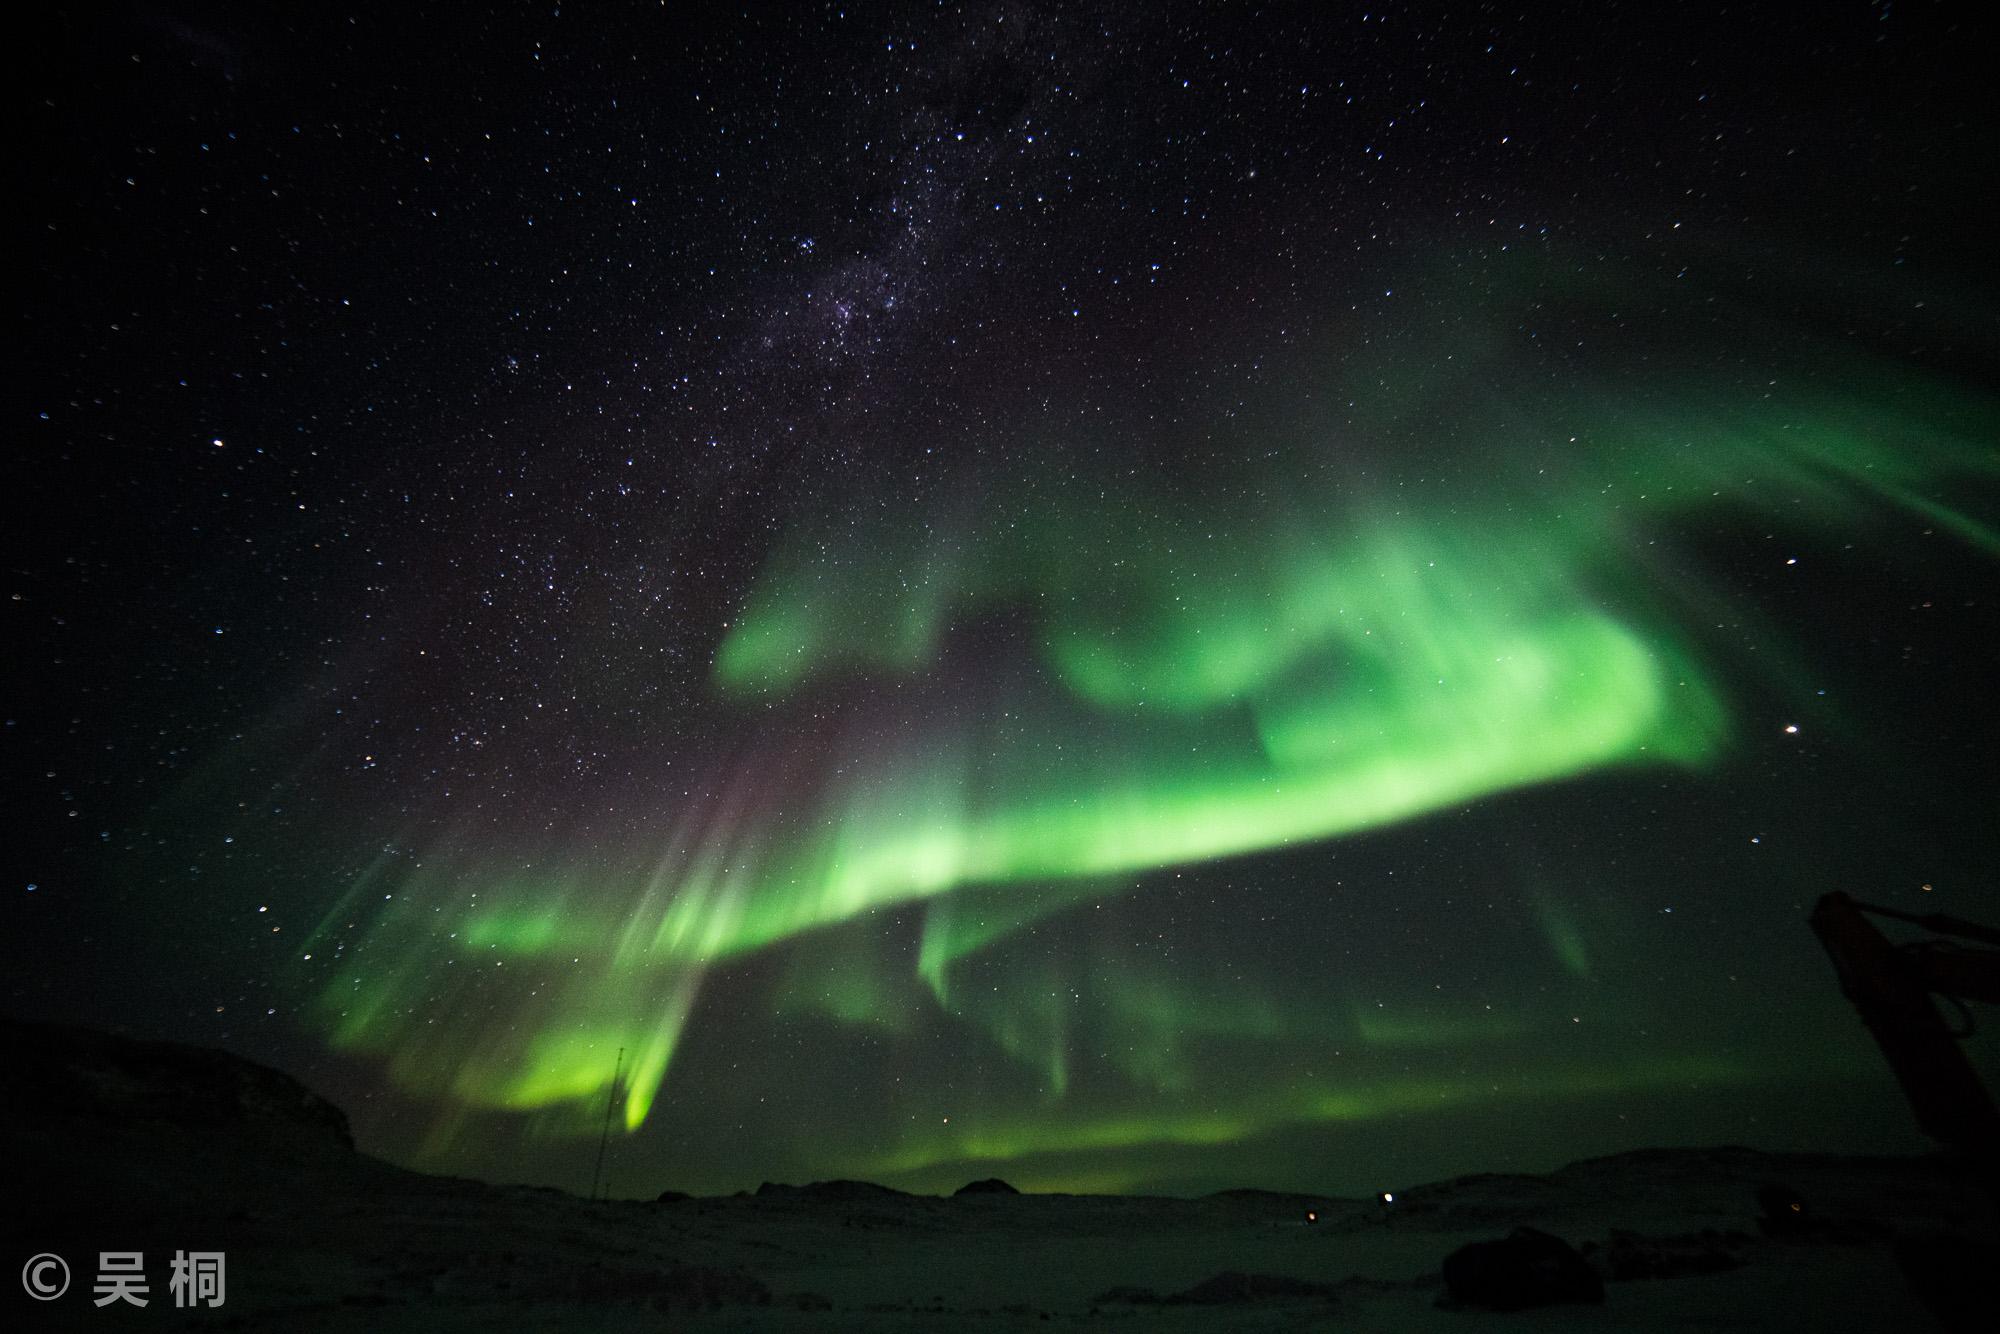 昨夜新西兰南岛极光大爆发，绝美南极光照片惊艳众人 - 澳纽网 - 中英双语资讯